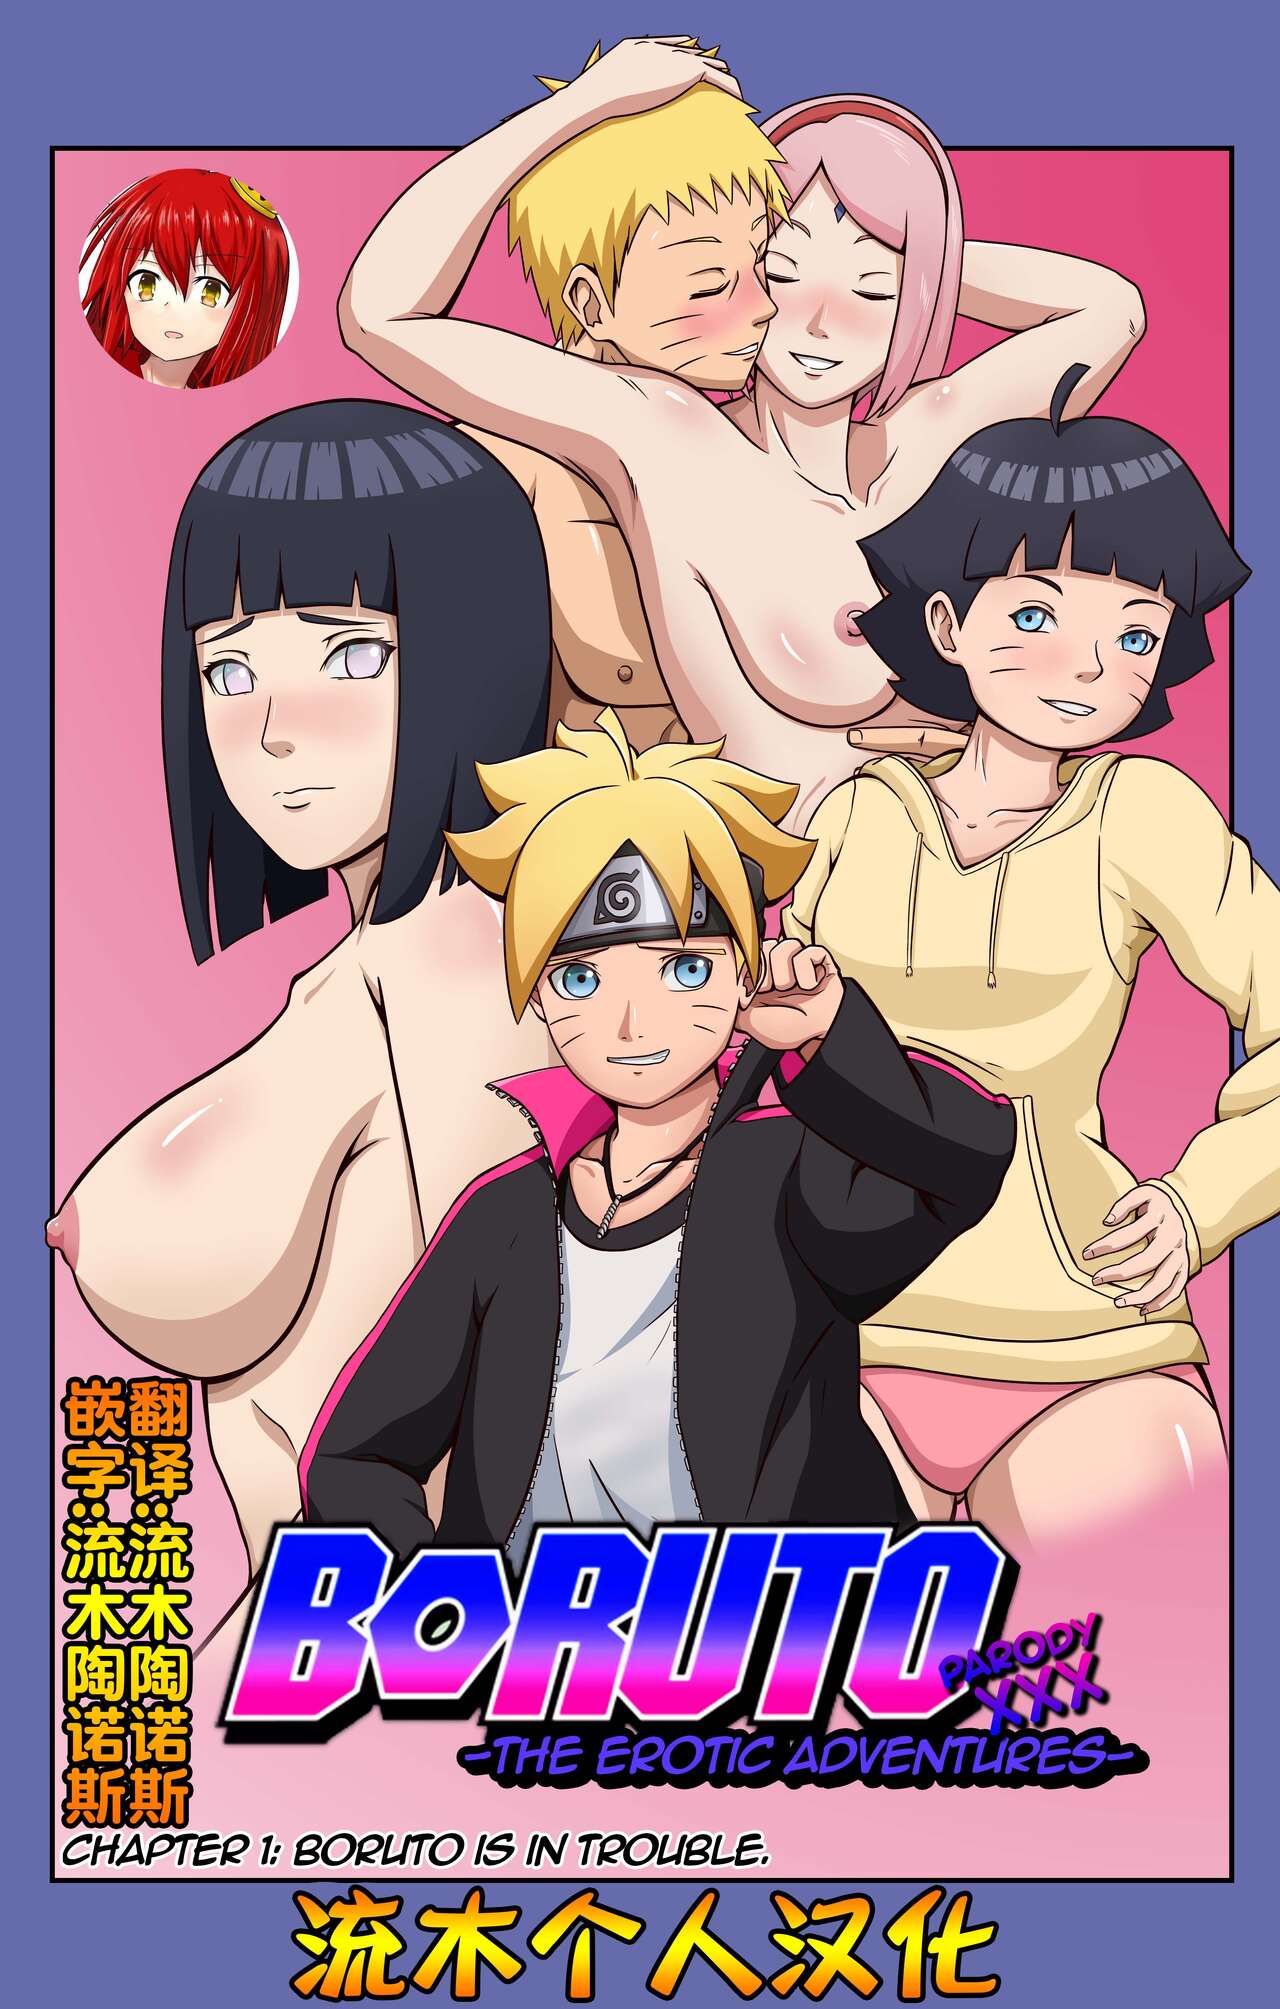 [Yutto Prime] Boruto Erotic Adventure chapter1:Boruto is in trouble[流木個人漢化] - 情色卡漫 -